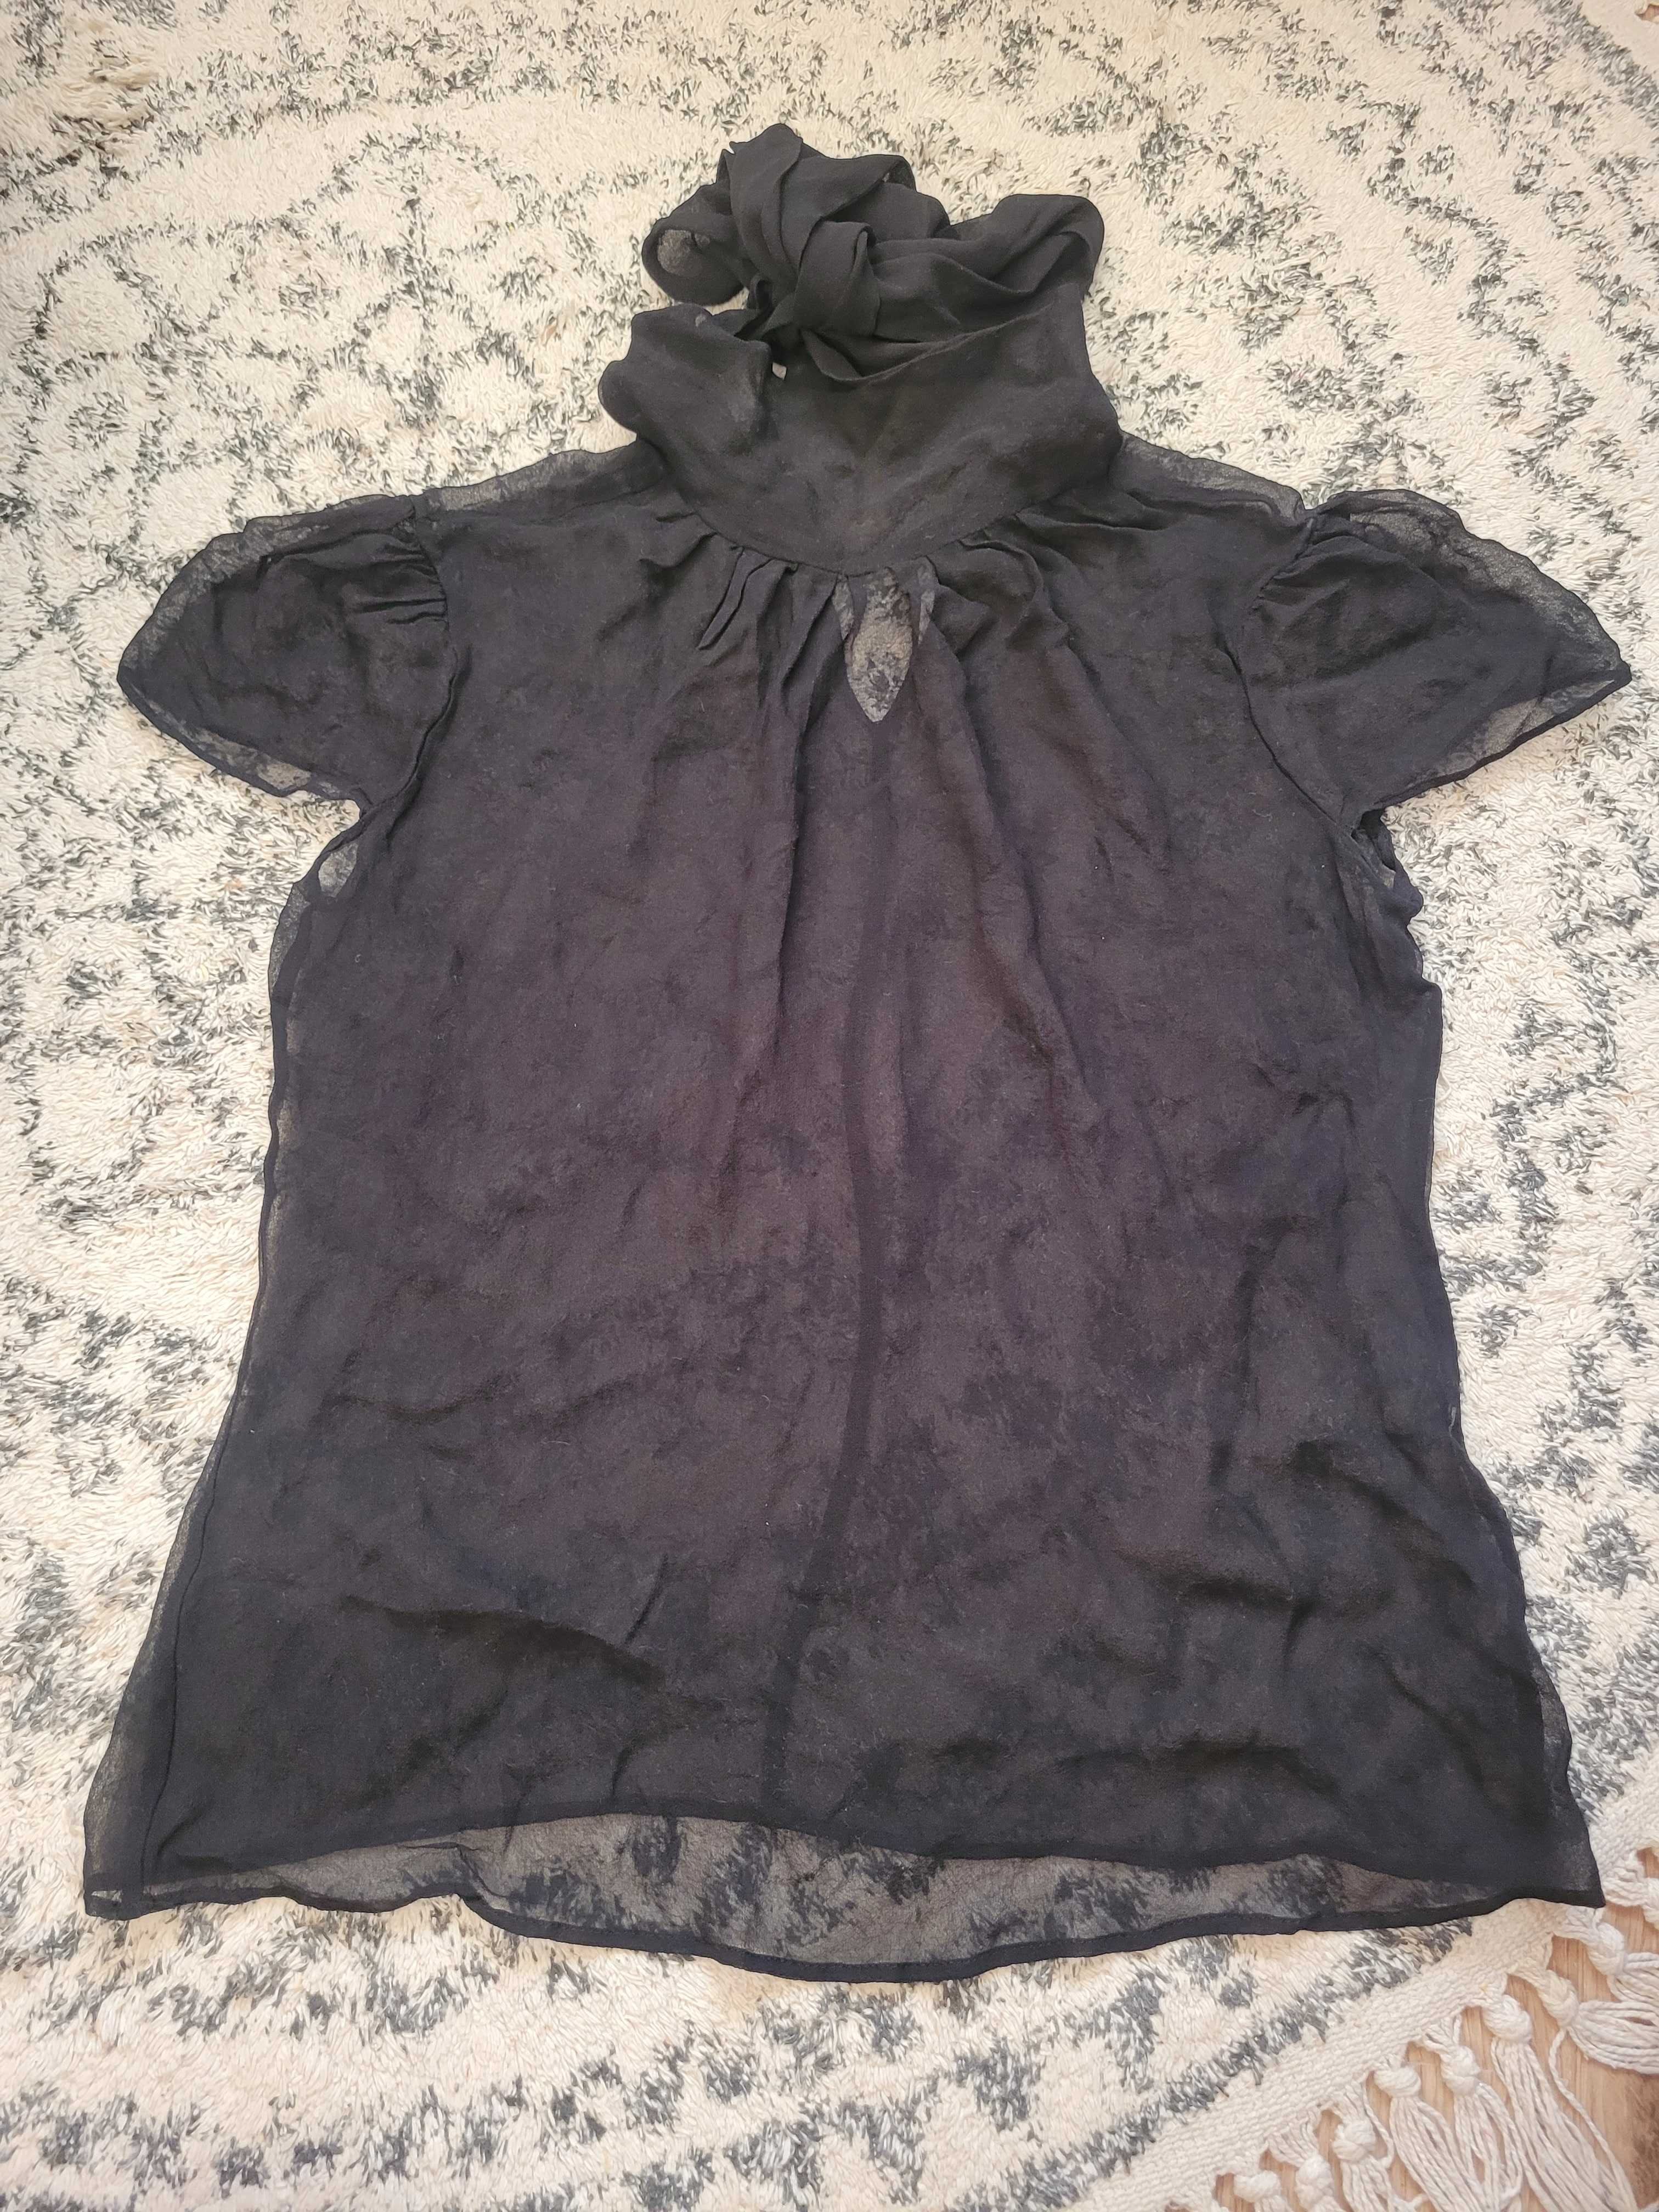 Czarna transparentna bluzka z krotkim rękawem, Zara